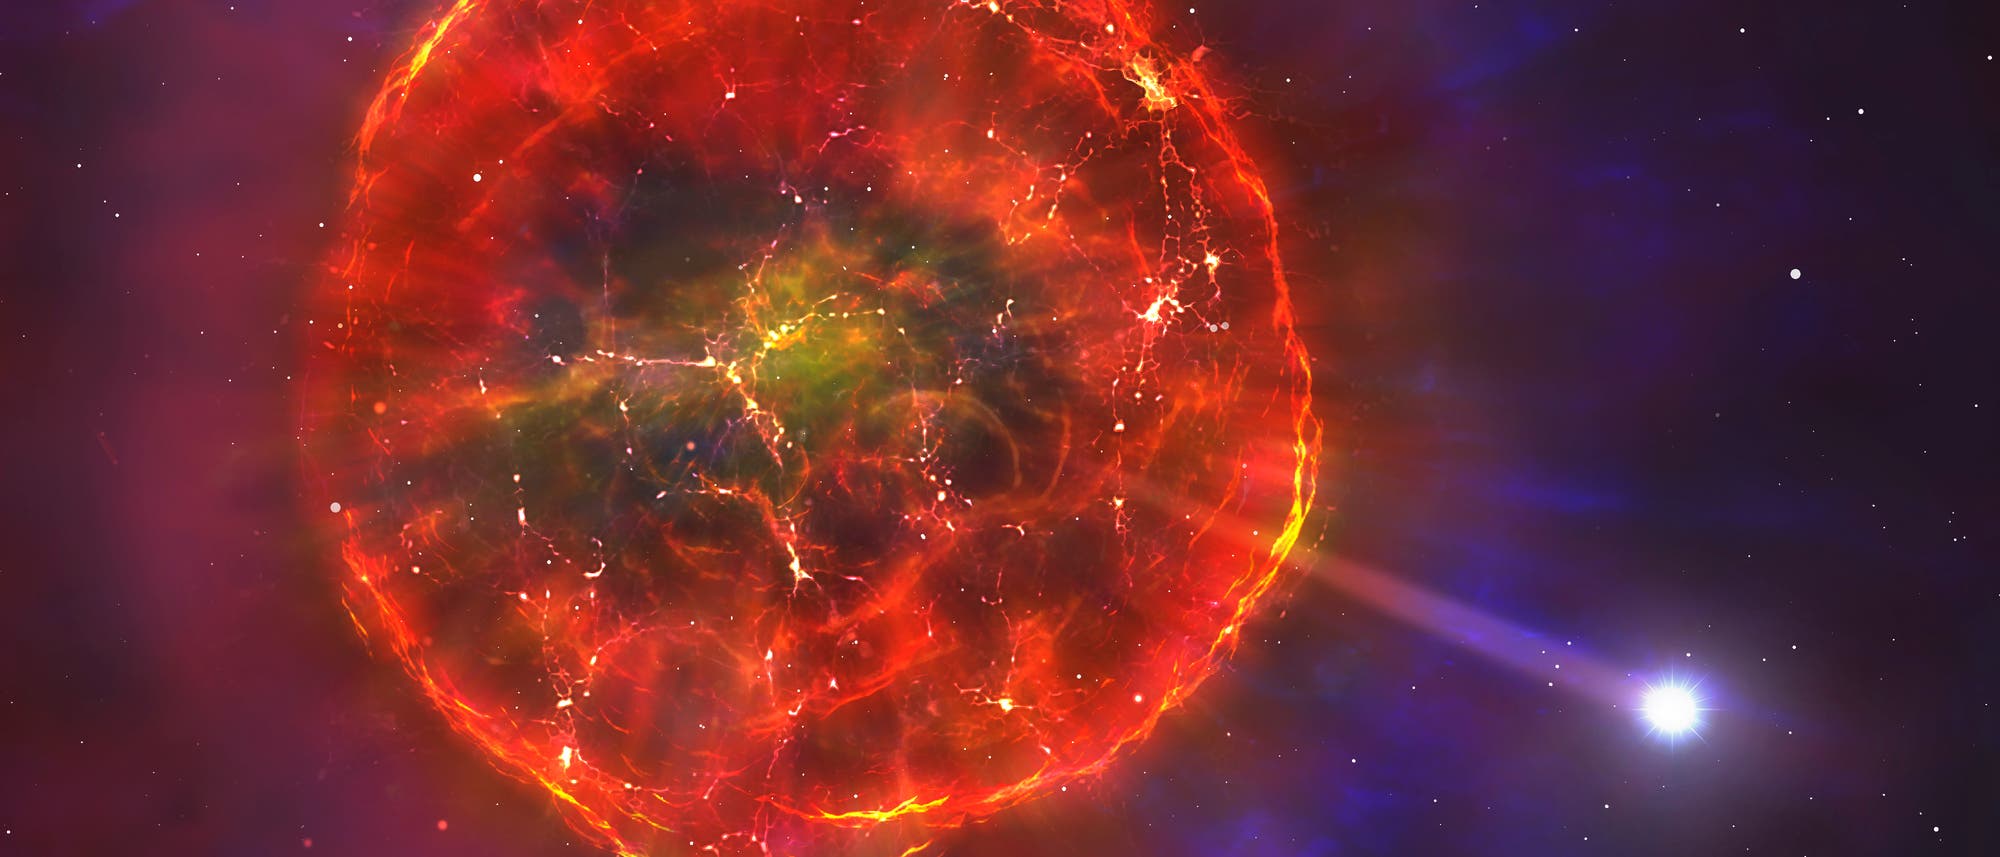 Weißer Zwergstern entkommt aus Supernova-Trümmerwolke (künstlerische Darstellung)